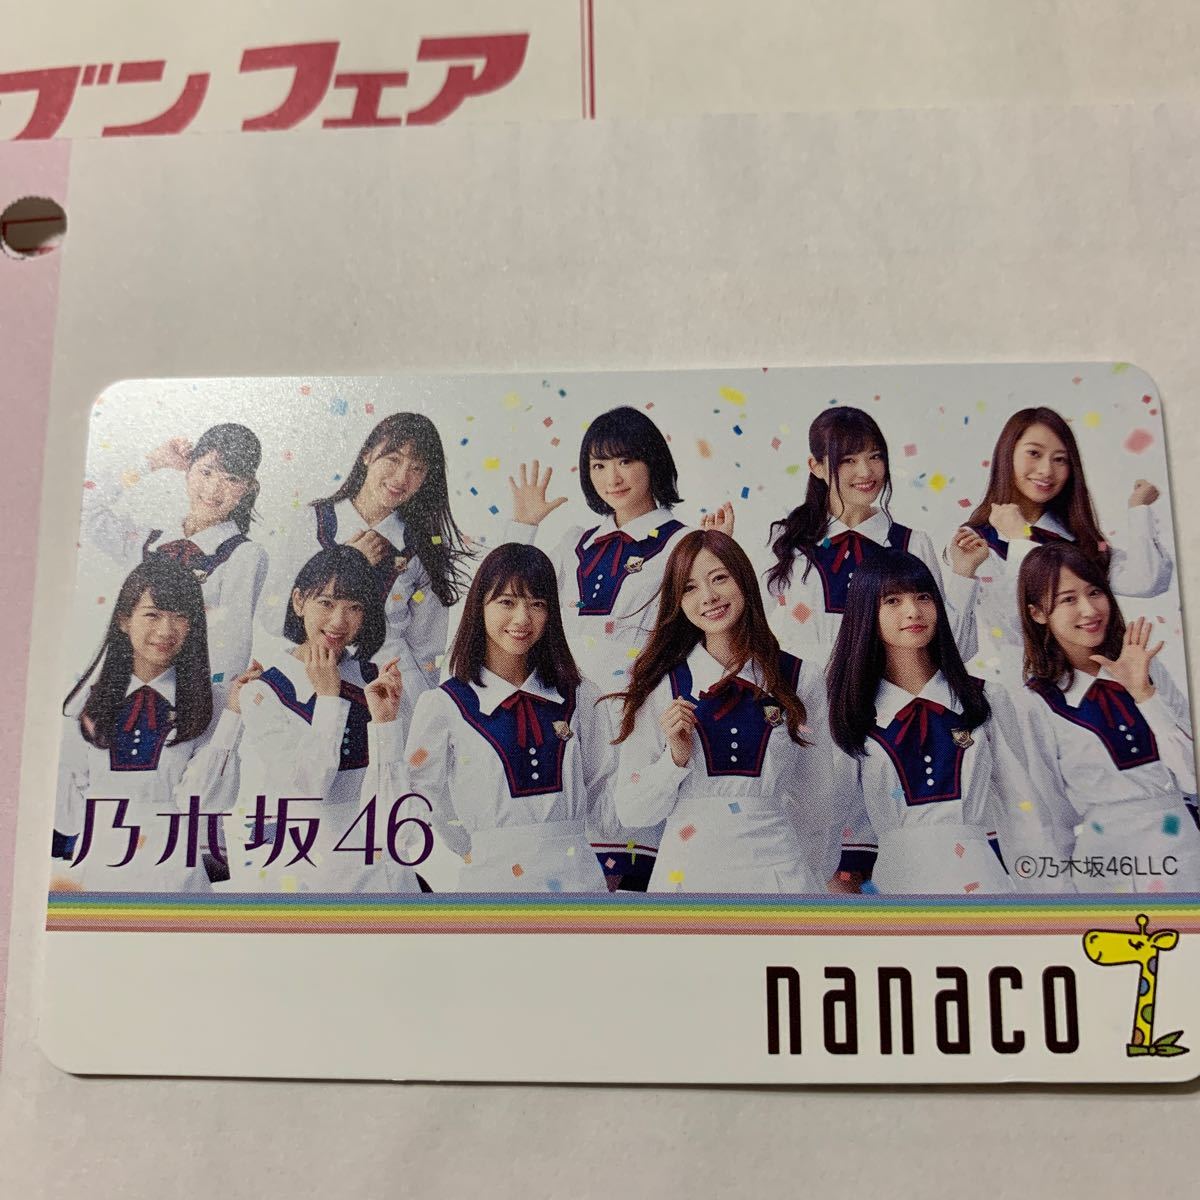 乃木坂46ナナコカード nanaco 限定品